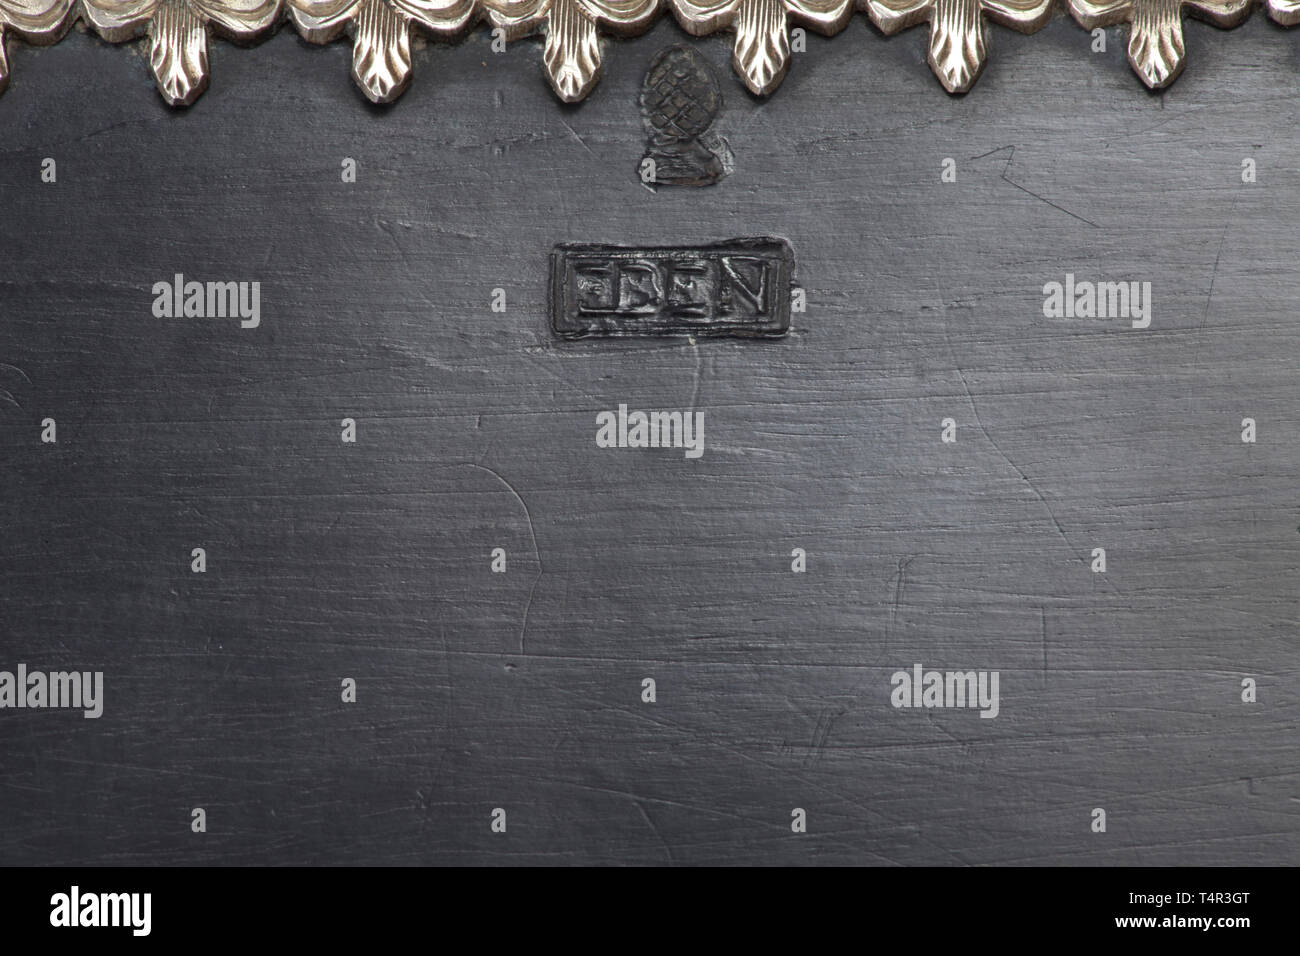 Una significativa argento-montato ebano scrigno, Augsburg, circa 1620 scrigno rettangolare con coperchio a gradini in noce con impiallacciatura di ebano (stampigliato sul lato retromarcia 'EBEN' sotto il Pyr di Augusta). Estremamente elaborate i raccordi di argento inciso con fini di openwork. Lo scudo con finemente incisi scena di antiquariato. Blocco intatto con l'originale del gambo cavo chiave con prua di trifoglio realizzata in ottone dorato. L'interno suddiviso in diversi scomparti, con il rivestimento originale realizzata in velluto rosso. 3 scomparti con coperchi realizzati da finemente , Additional-Rights-Clearance-Info-Not-Available Foto Stock